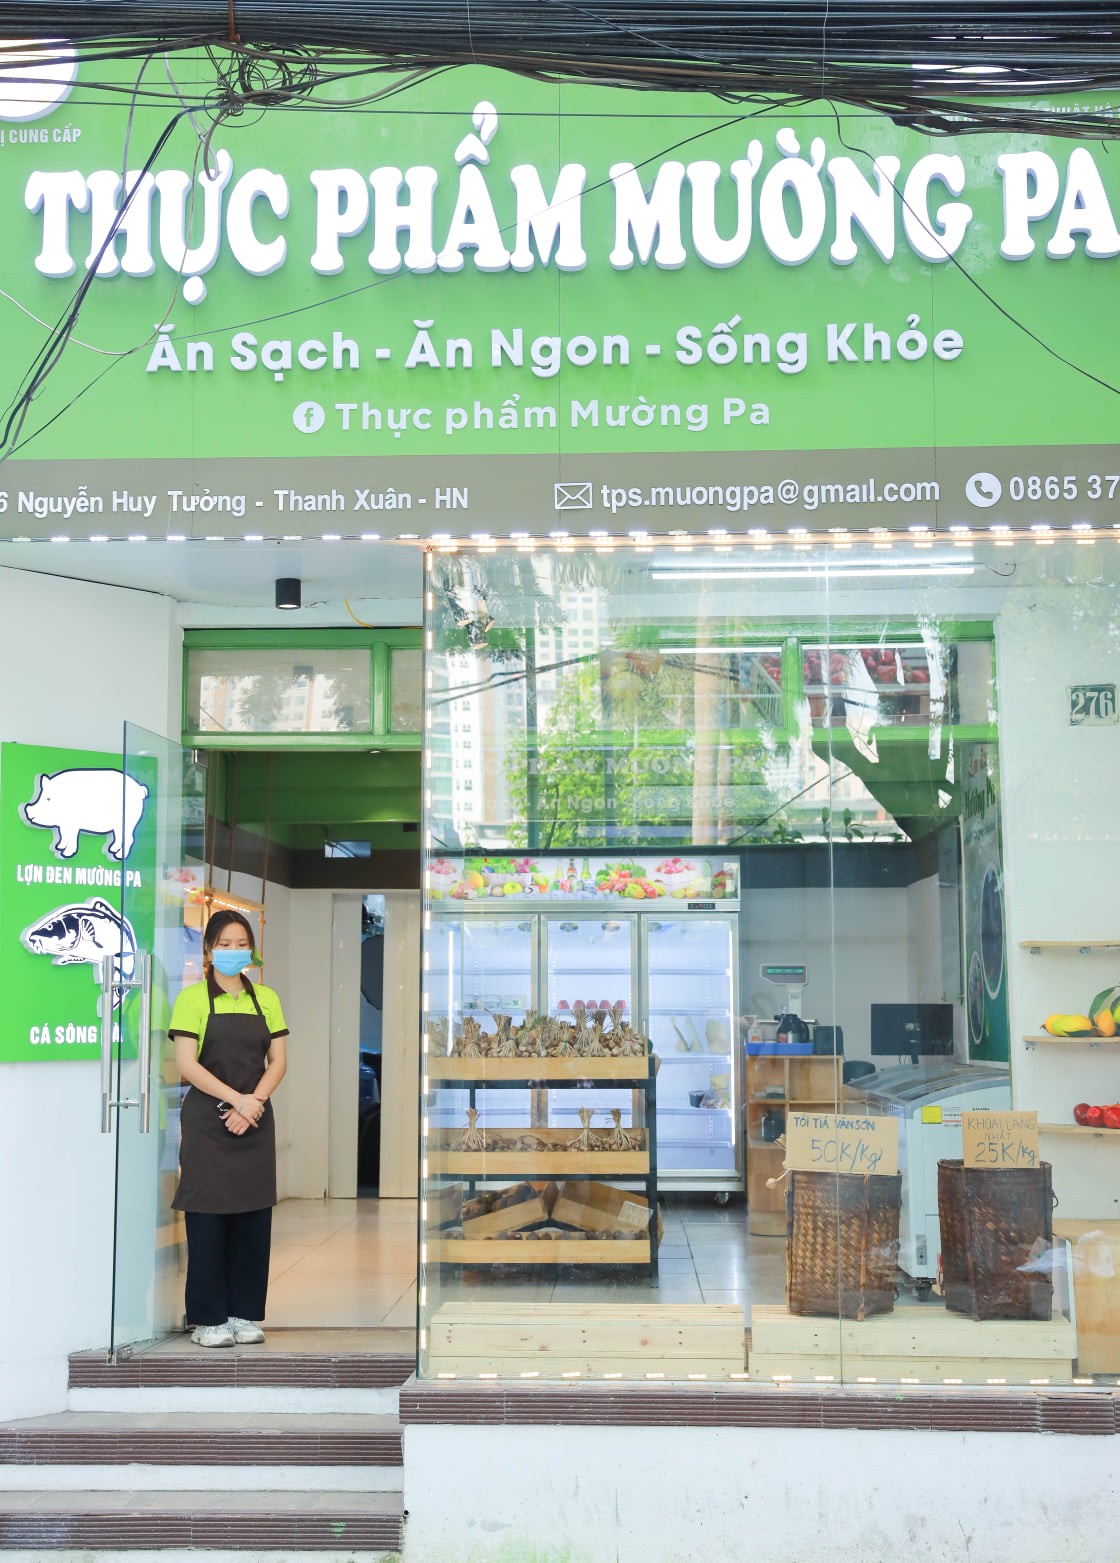 Cửa hàng Thực phẩm Mường Pa theo đuổi  mô hình kinh doanh vì cộng đồng